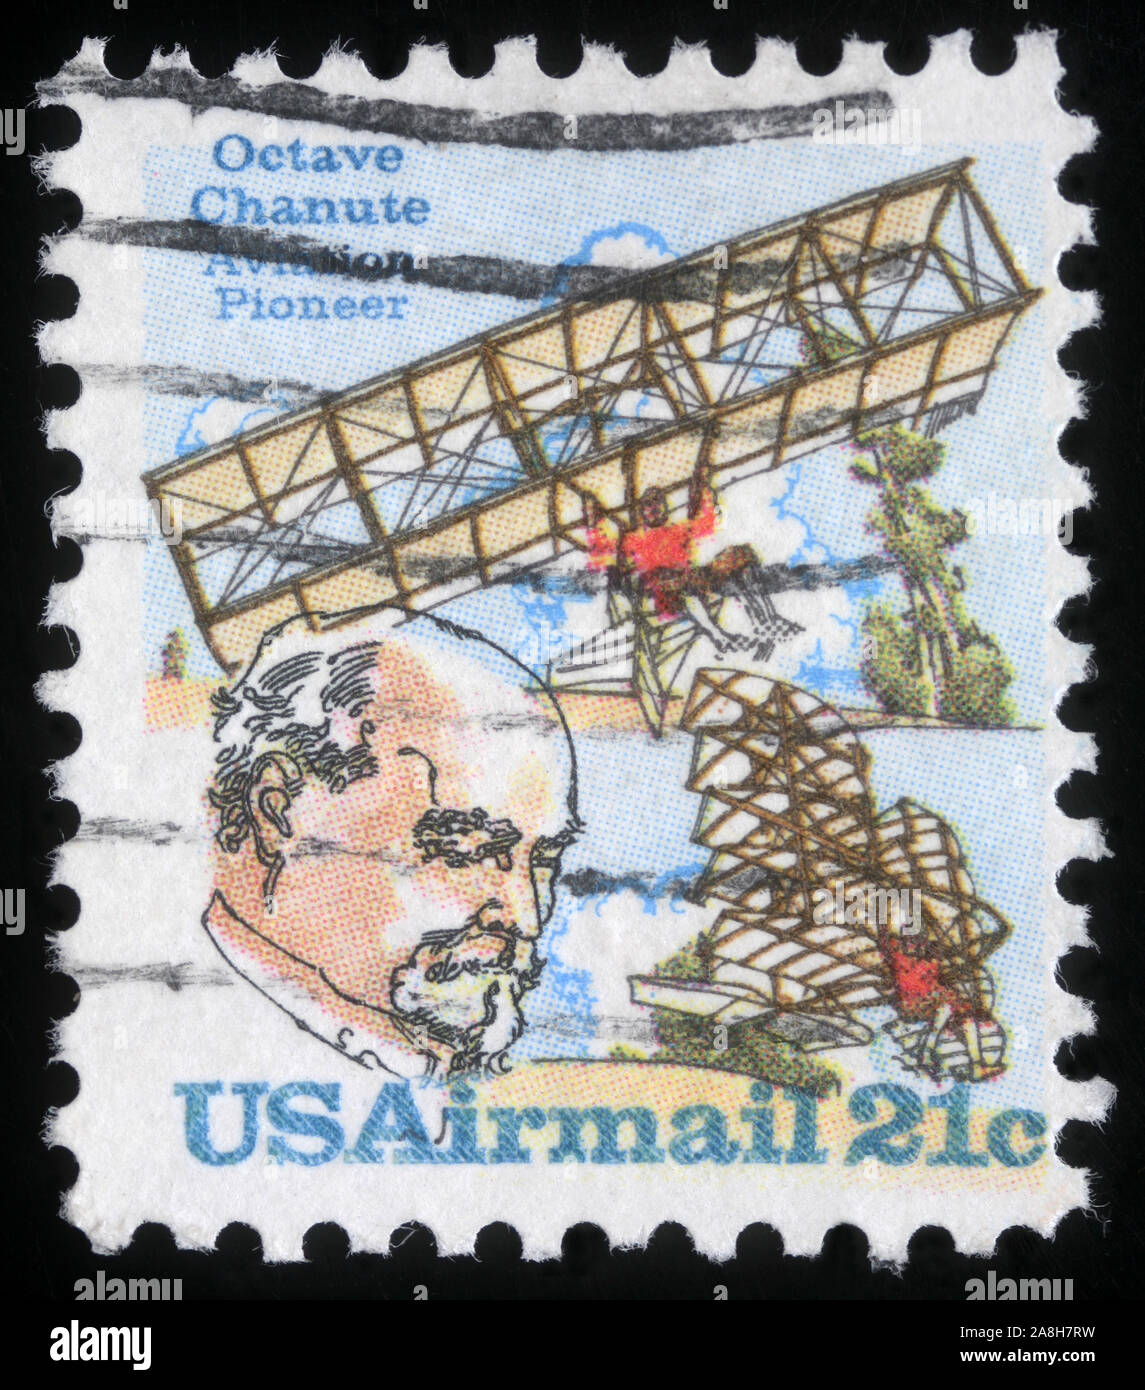 Timbres des États-Unis d'Amérique montre Octave Chanute, pionnier de l'aviation, vers 1978 Banque D'Images